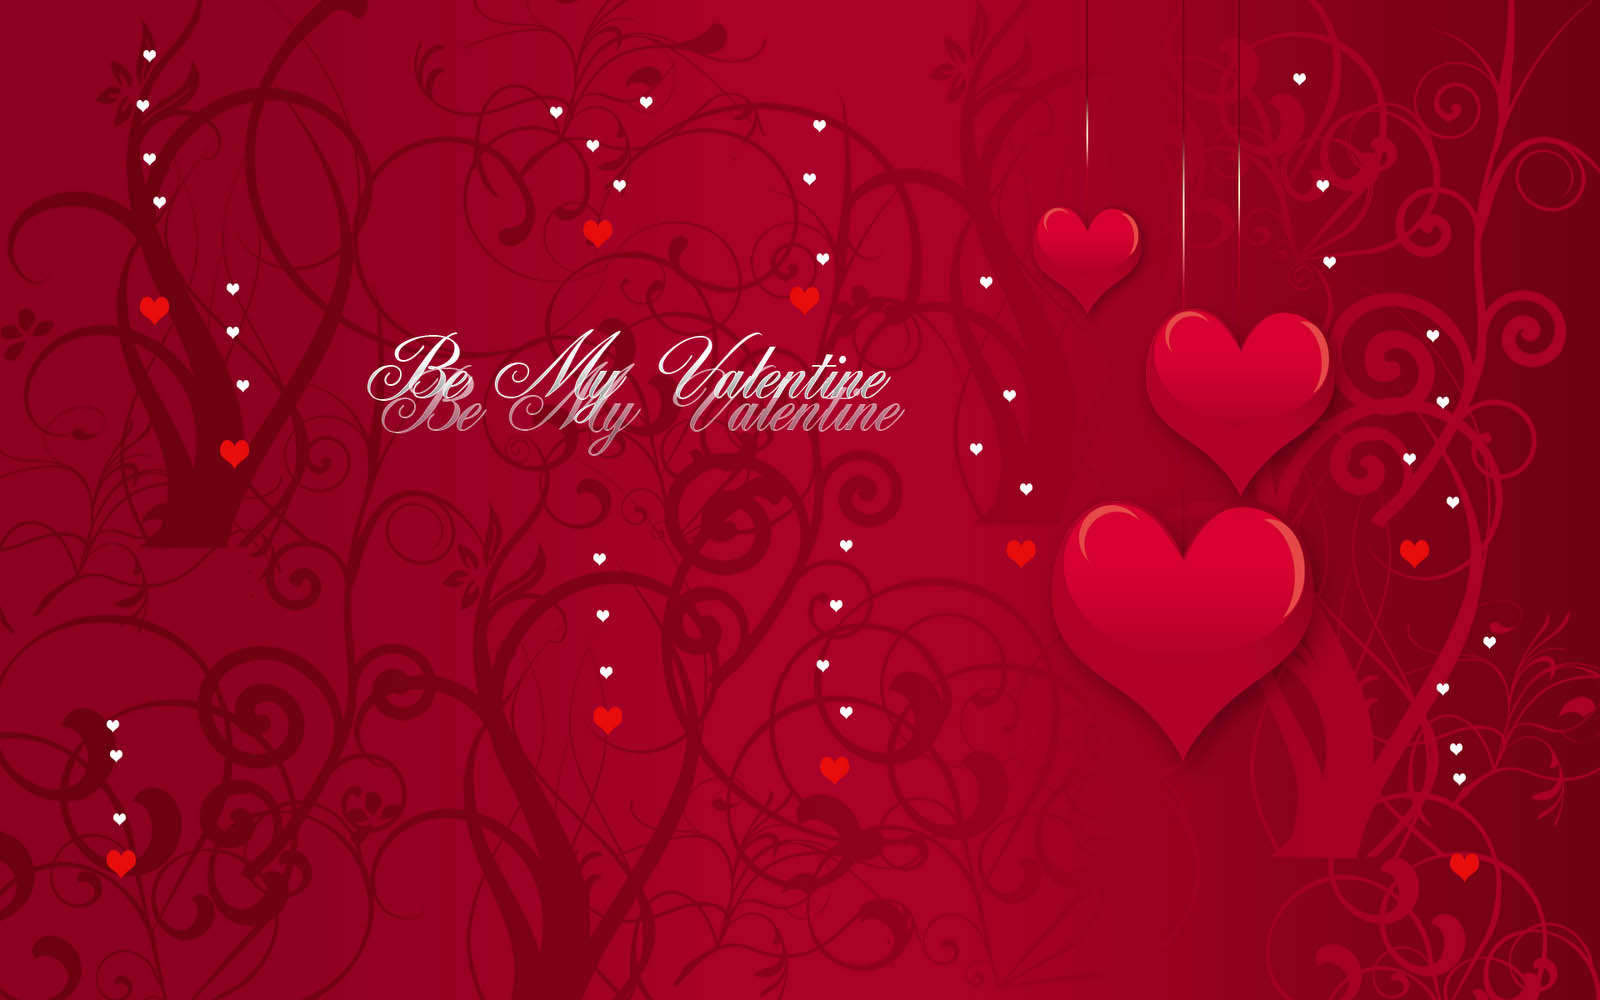 Trang trí cho máy tính của bạn với những hình nền Valentine hoàn toàn miễn phí. Hãy tạo cho nó một vẻ ngoài đầy lãng mạn và tình yêu với những hình ảnh đẹp nhất.